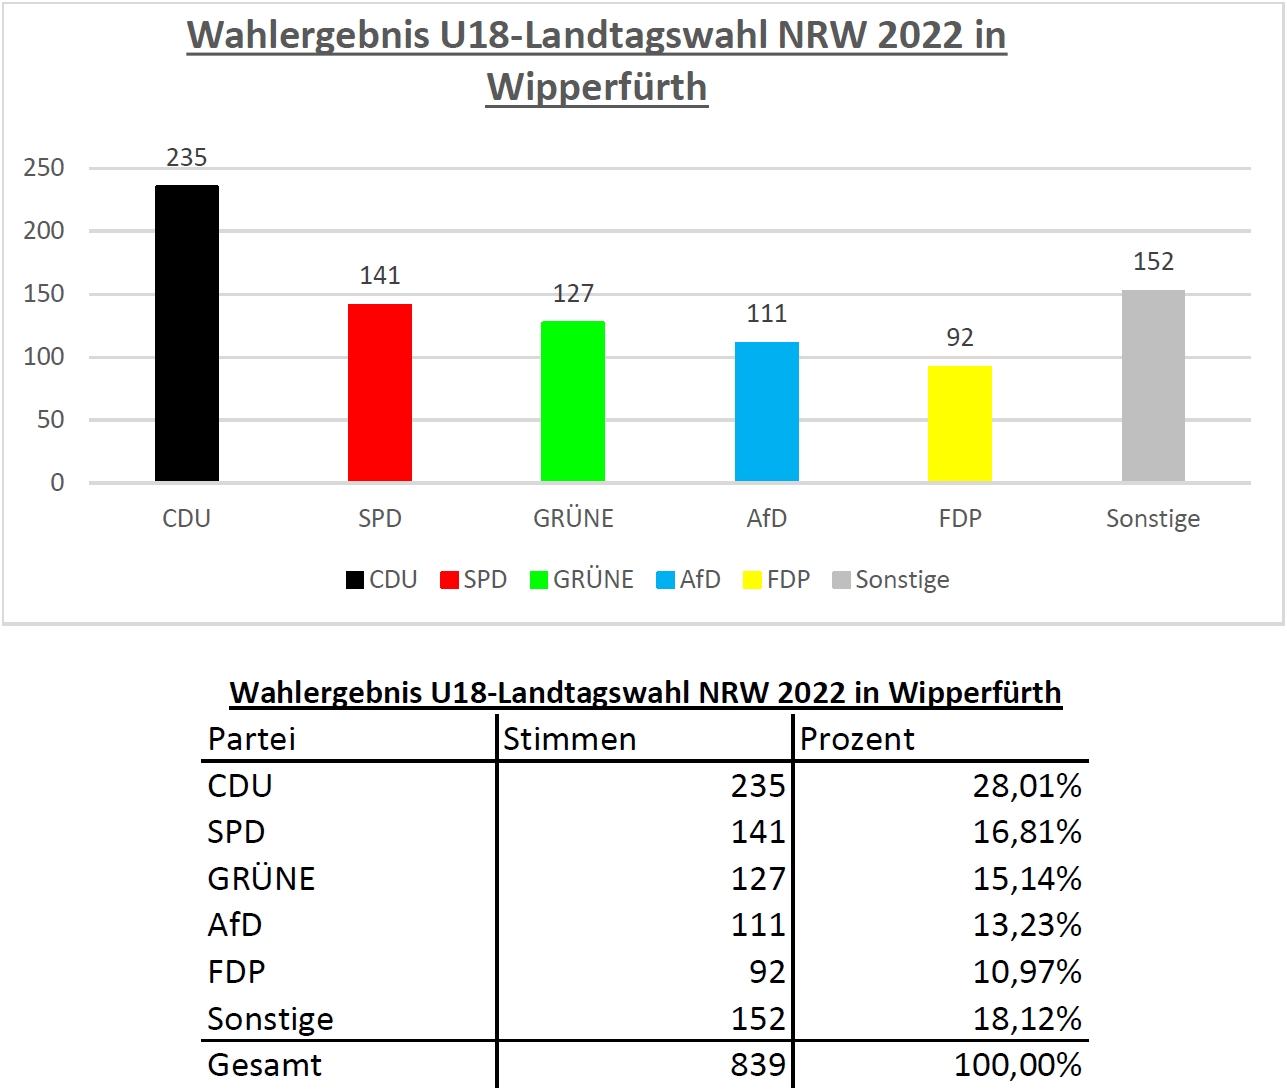 Ergebnis für Wipperfürth der U18-Landtagswahl in NRW